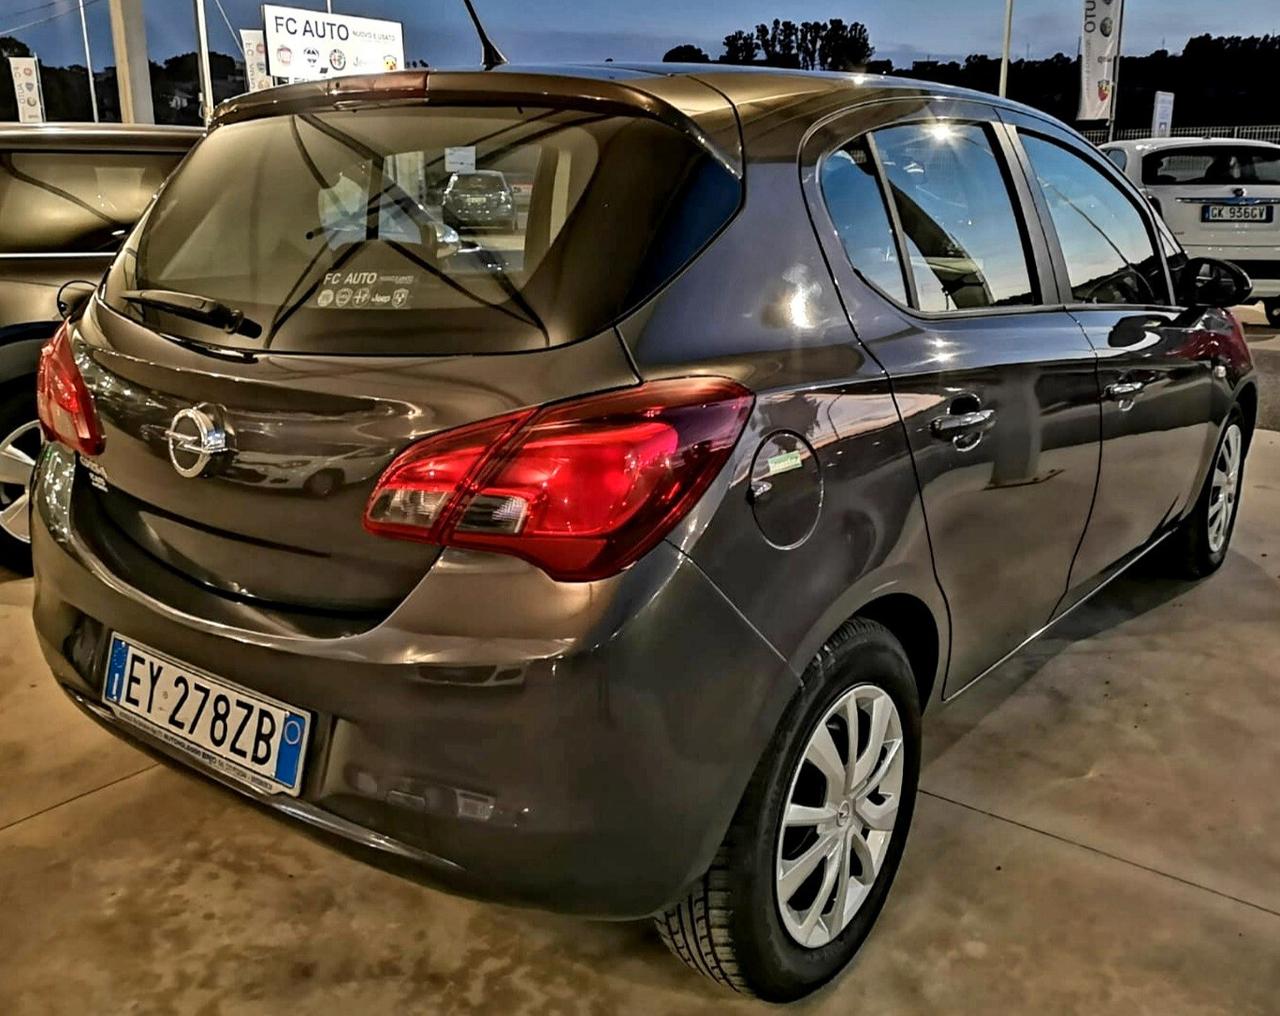 Opel Corsa 1.2 5 porte - GARANTITA - PARI AL NUOVO - tua da 145 euro al mese